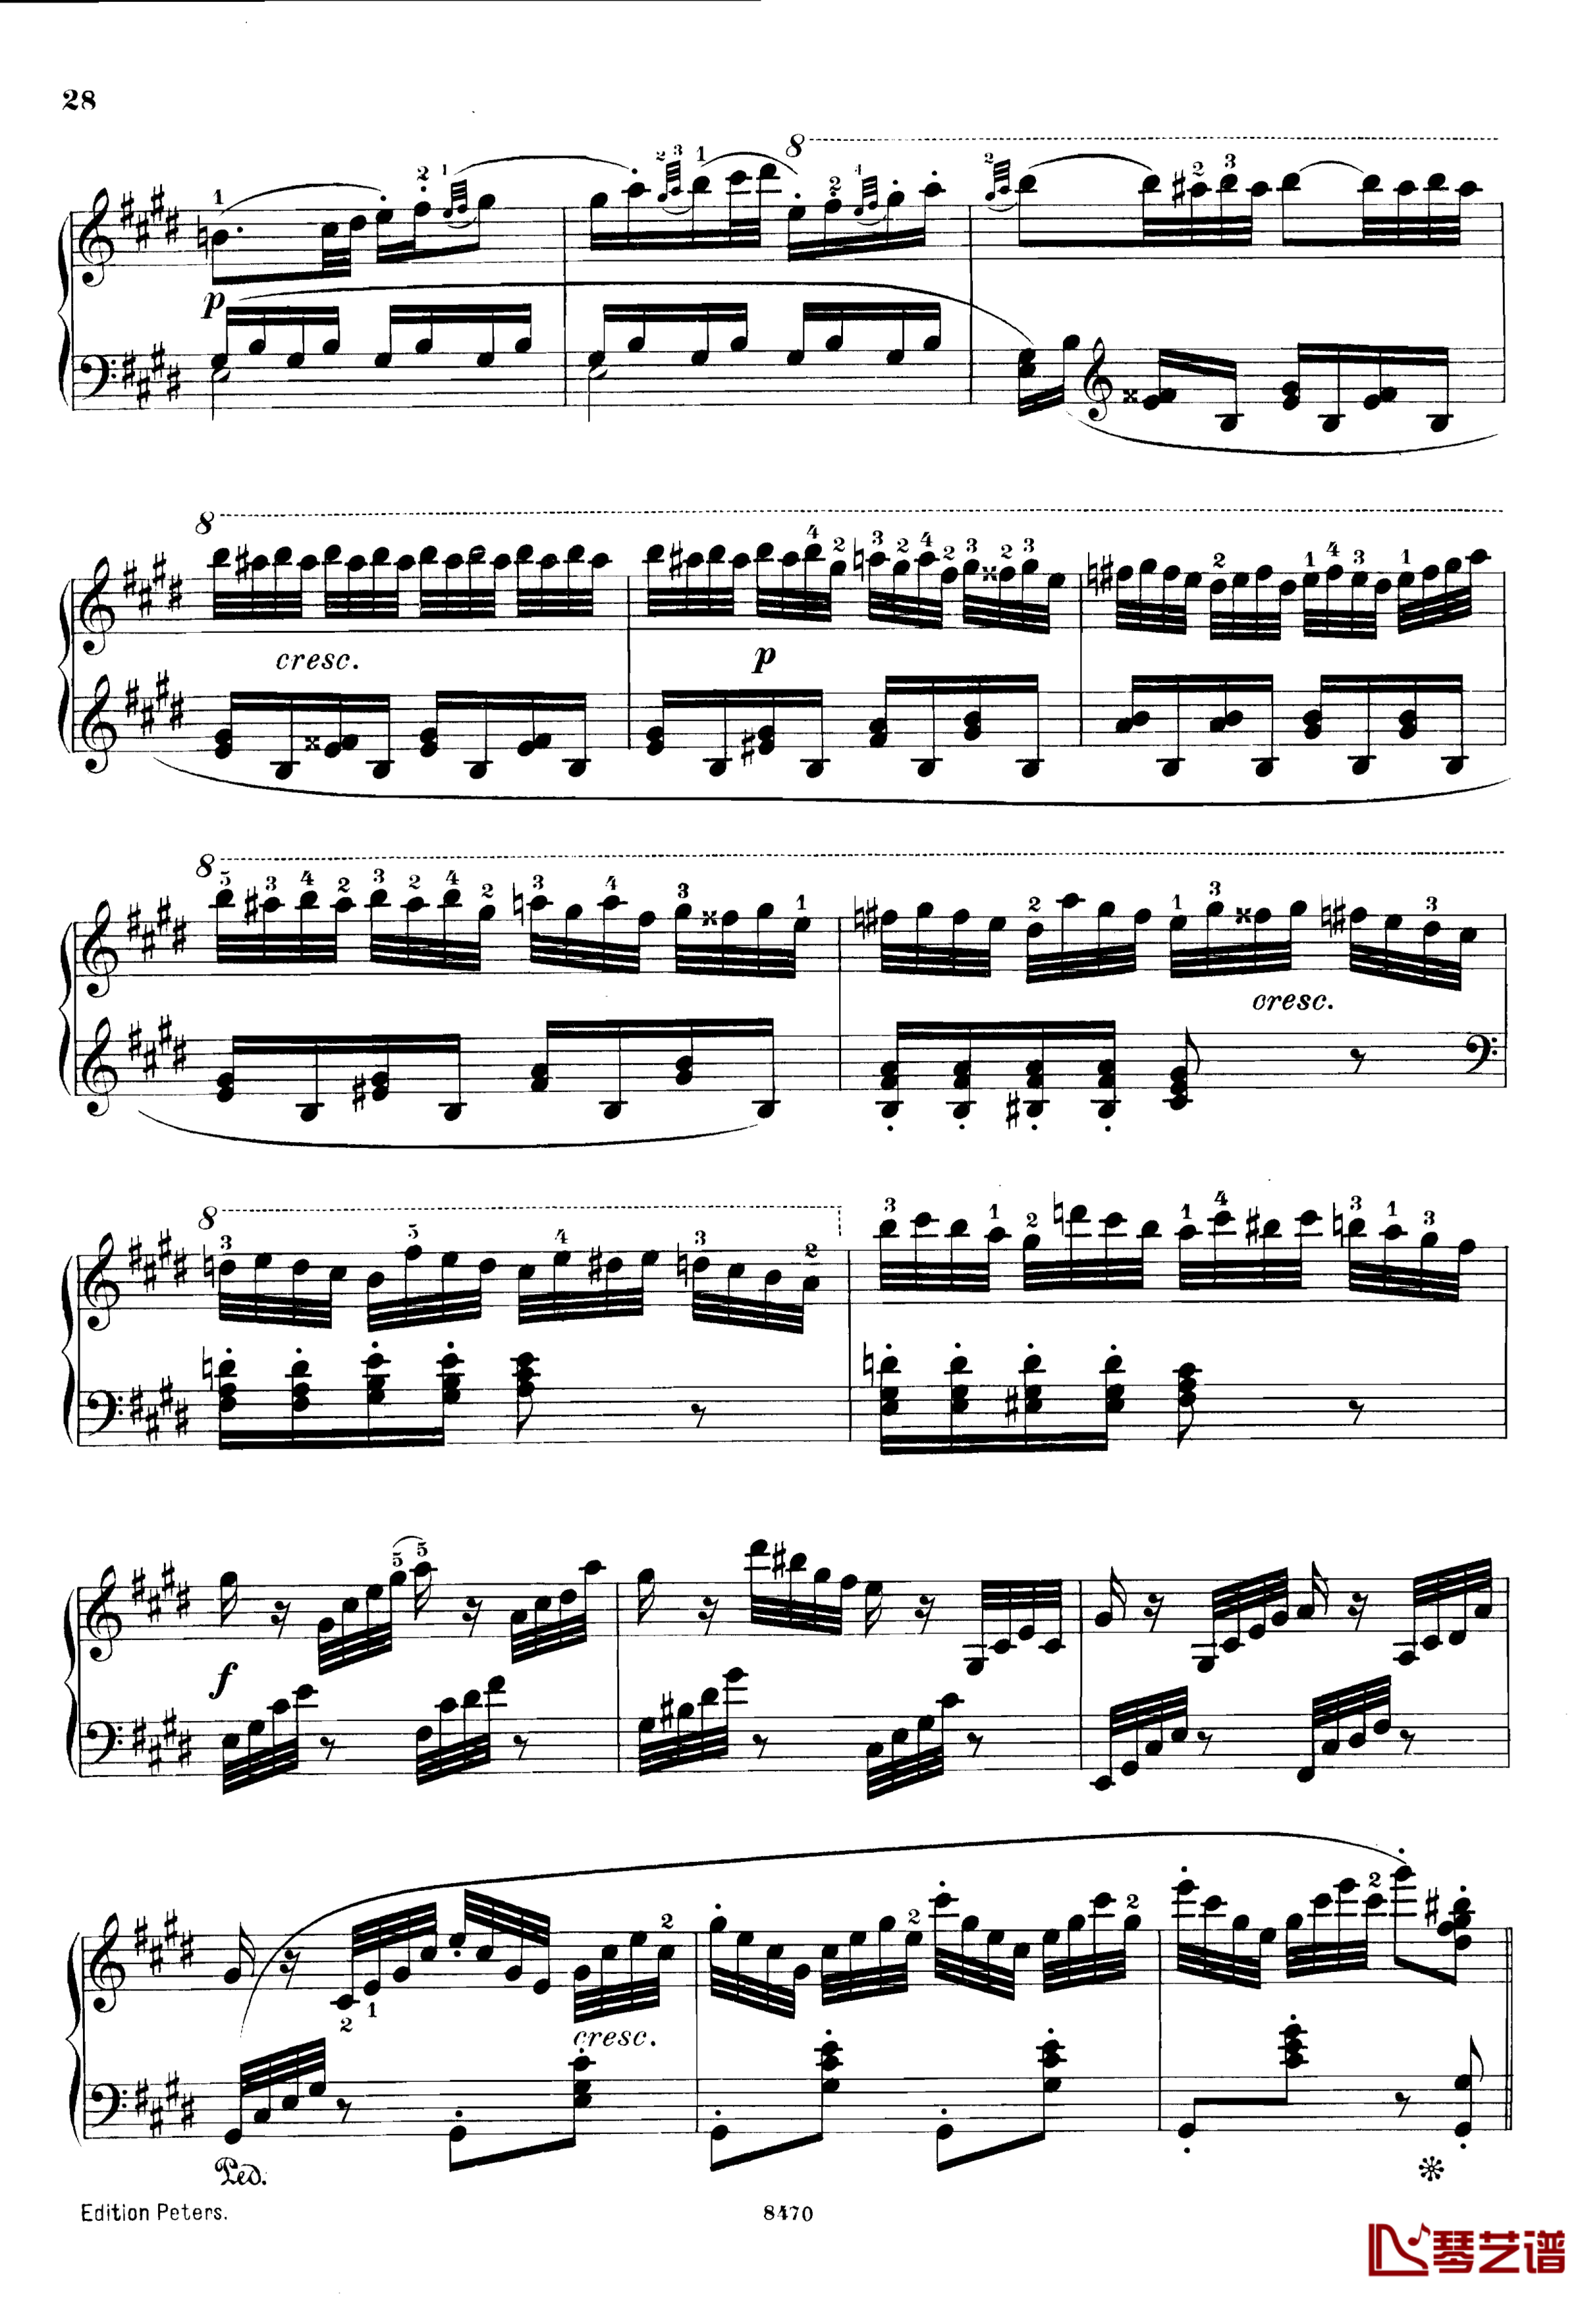 升c小调第三钢琴协奏曲Op.55钢琴谱-克里斯蒂安-里斯28